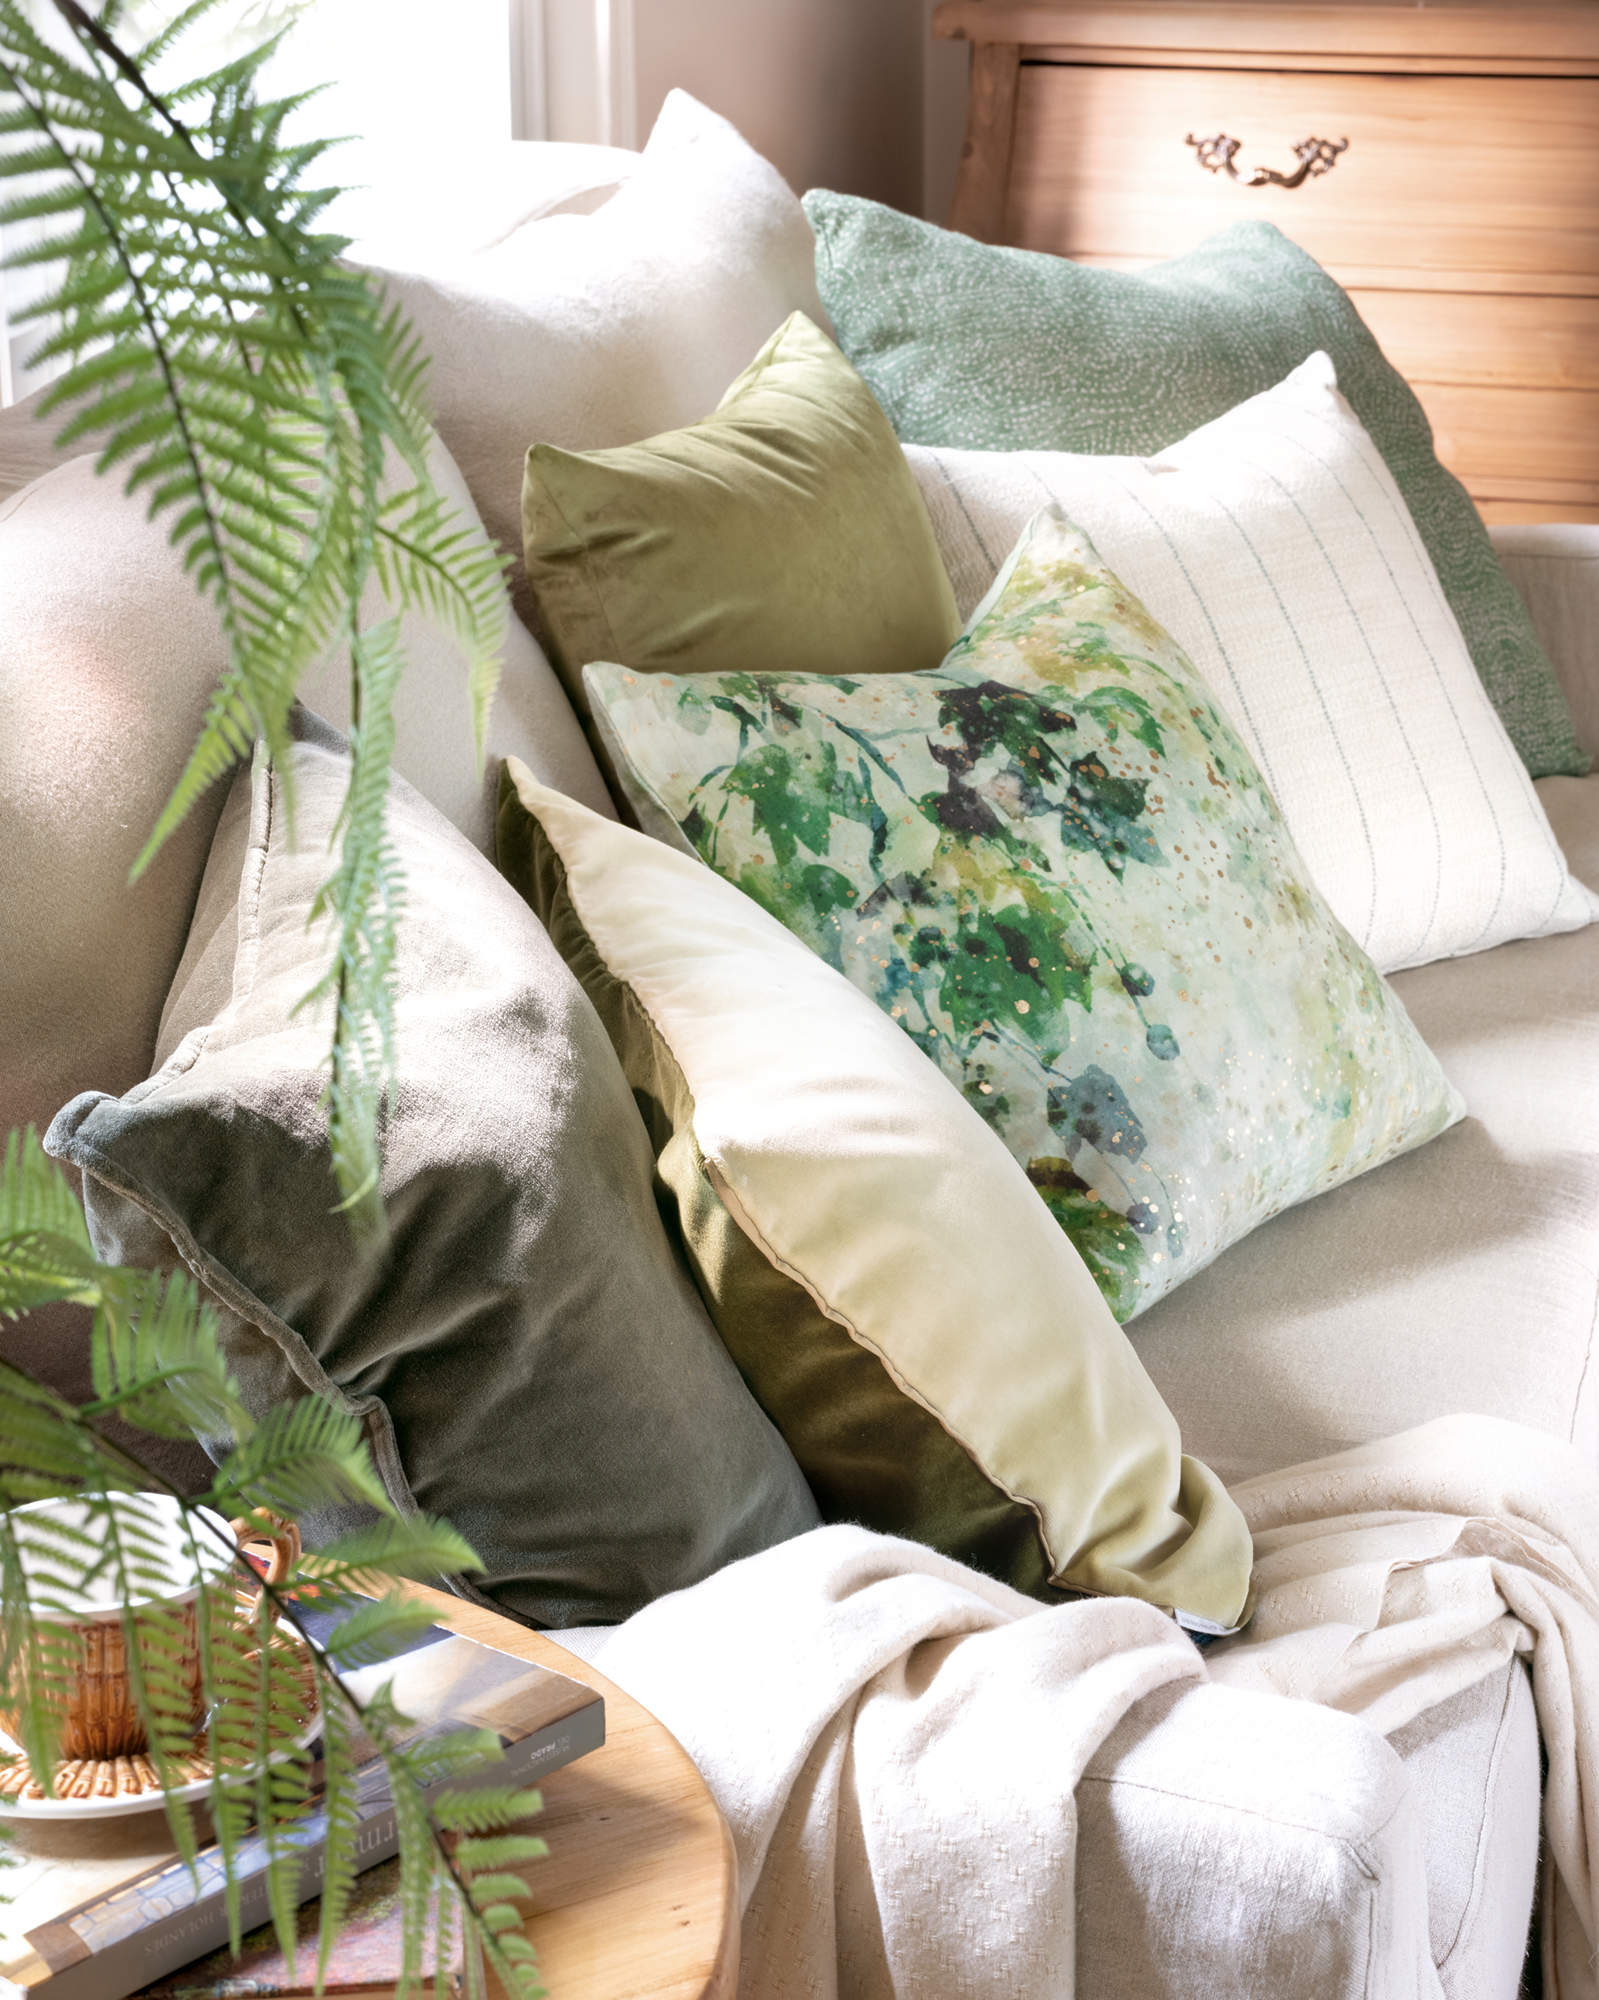 Detalle de cojines verdes y beige sobre sofá de lino.